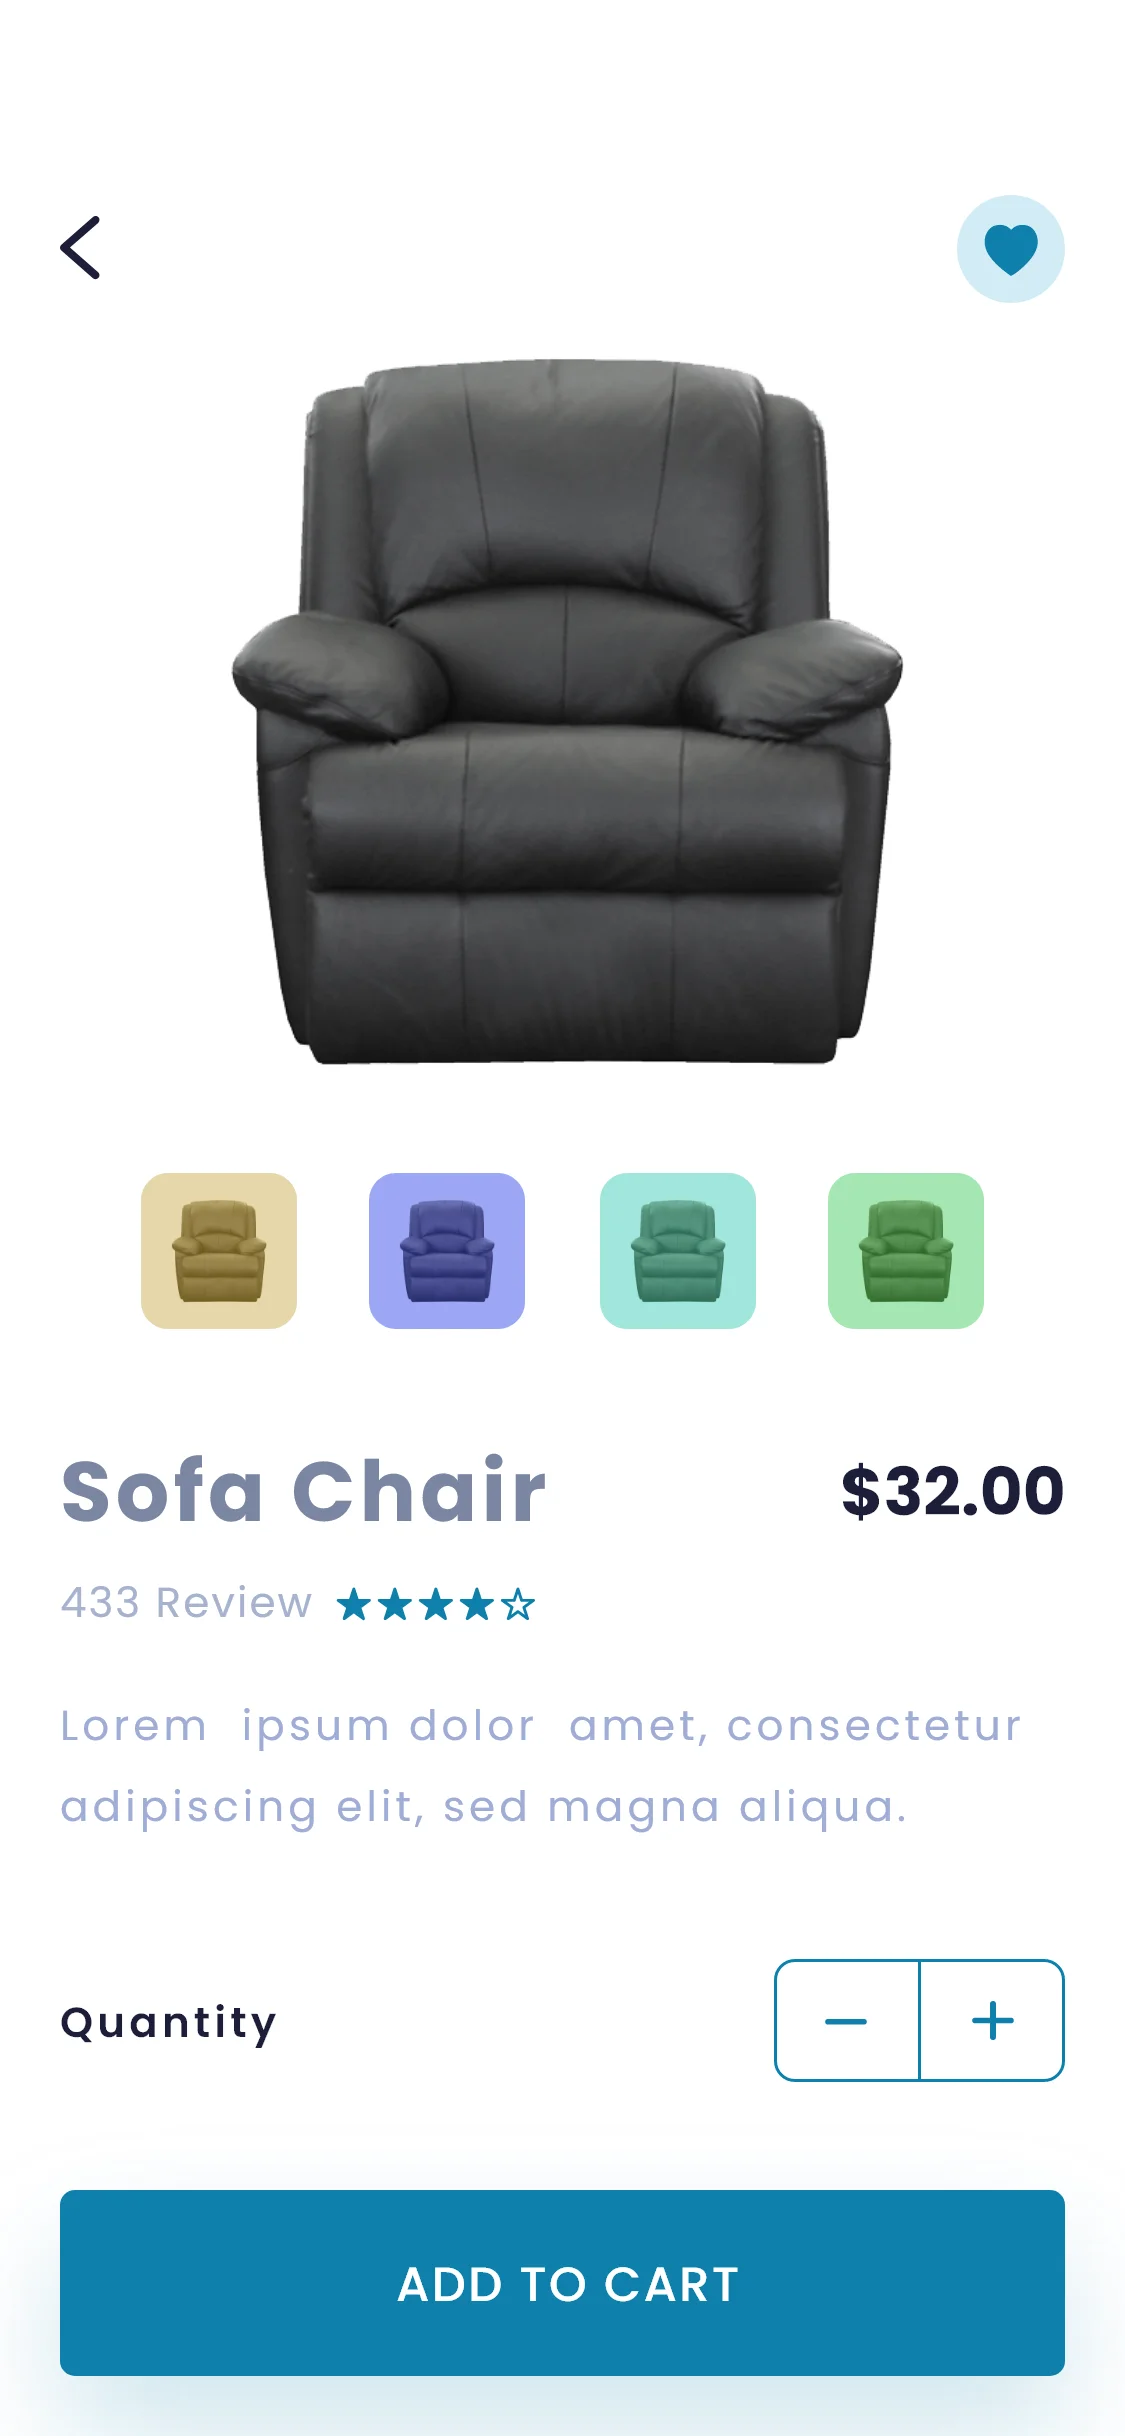 家具应用UI设计模板 furniture e commerce app-ui套件、应用、网购-到位啦UI